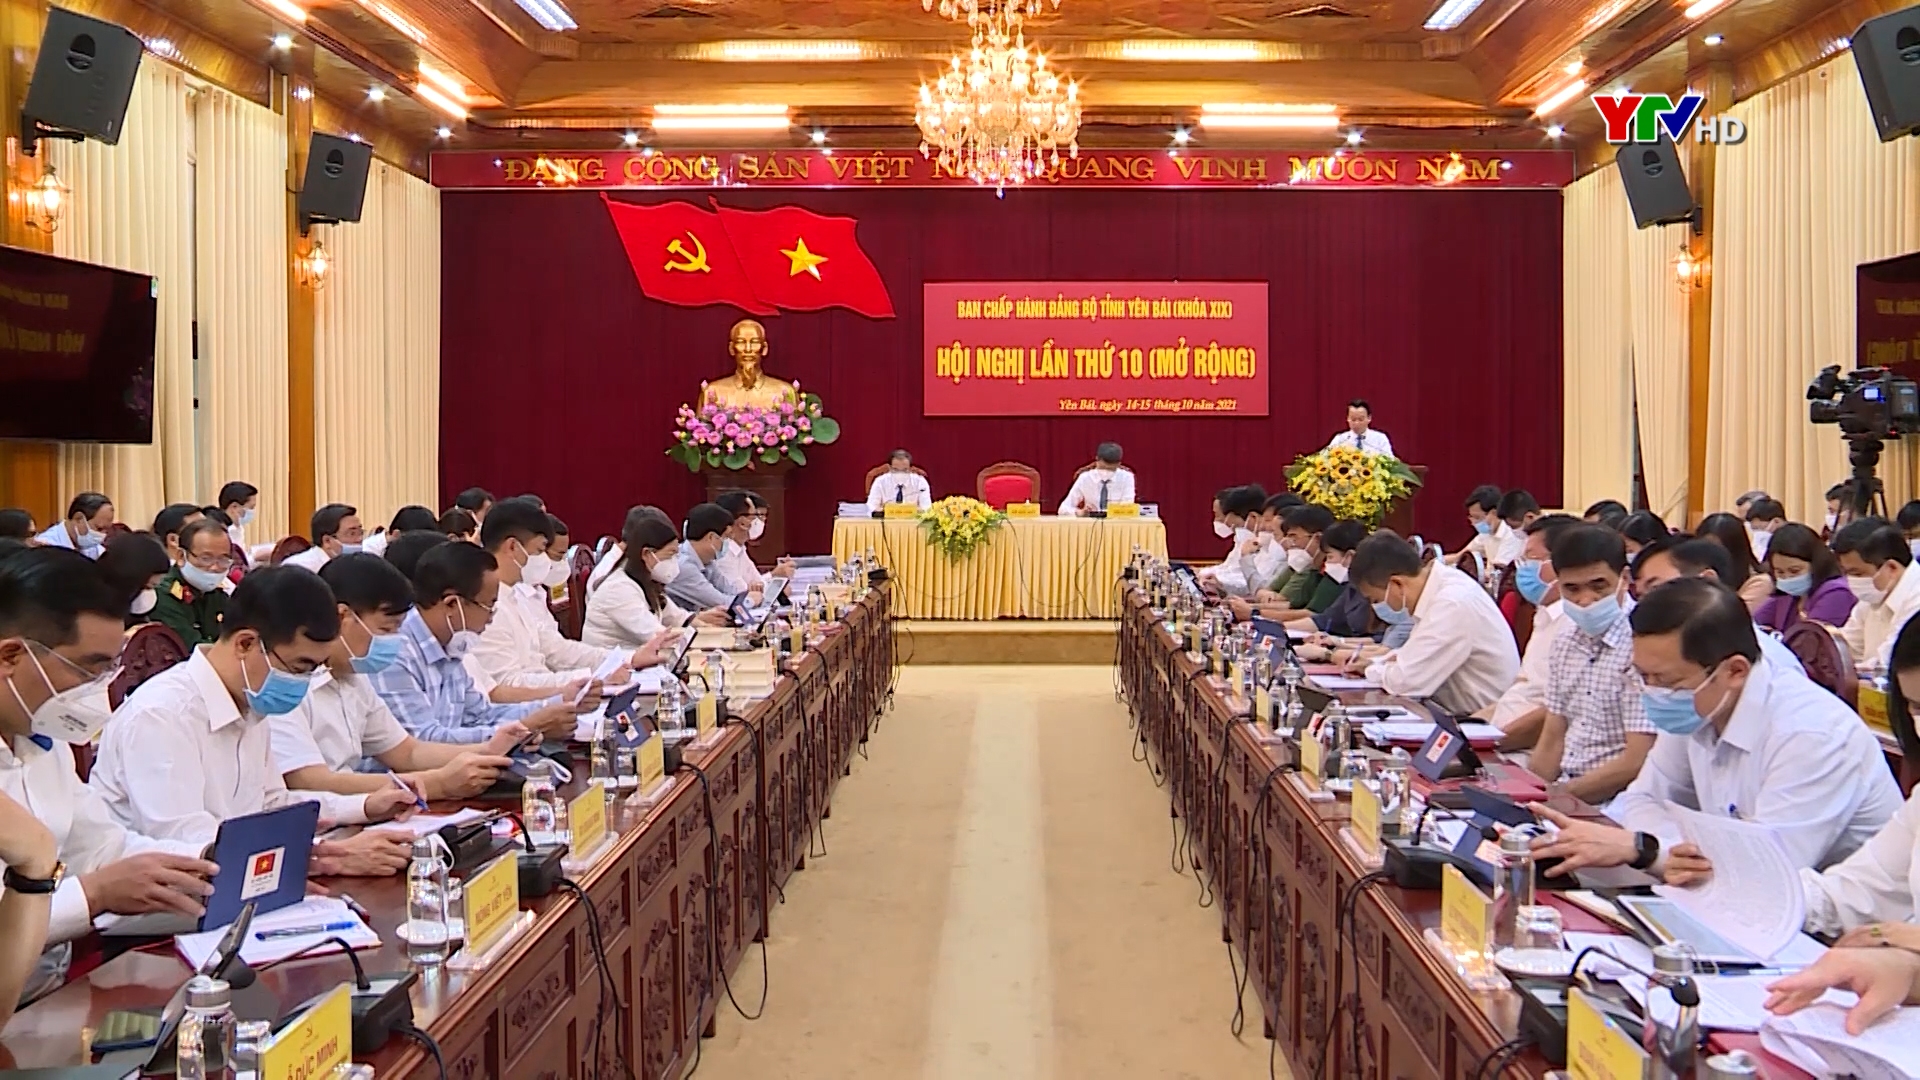 Khai mạc Hội nghị Ban Chấp hành Đảng bộ tỉnh Yên Bái lần thứ 10 ( mở rộng)